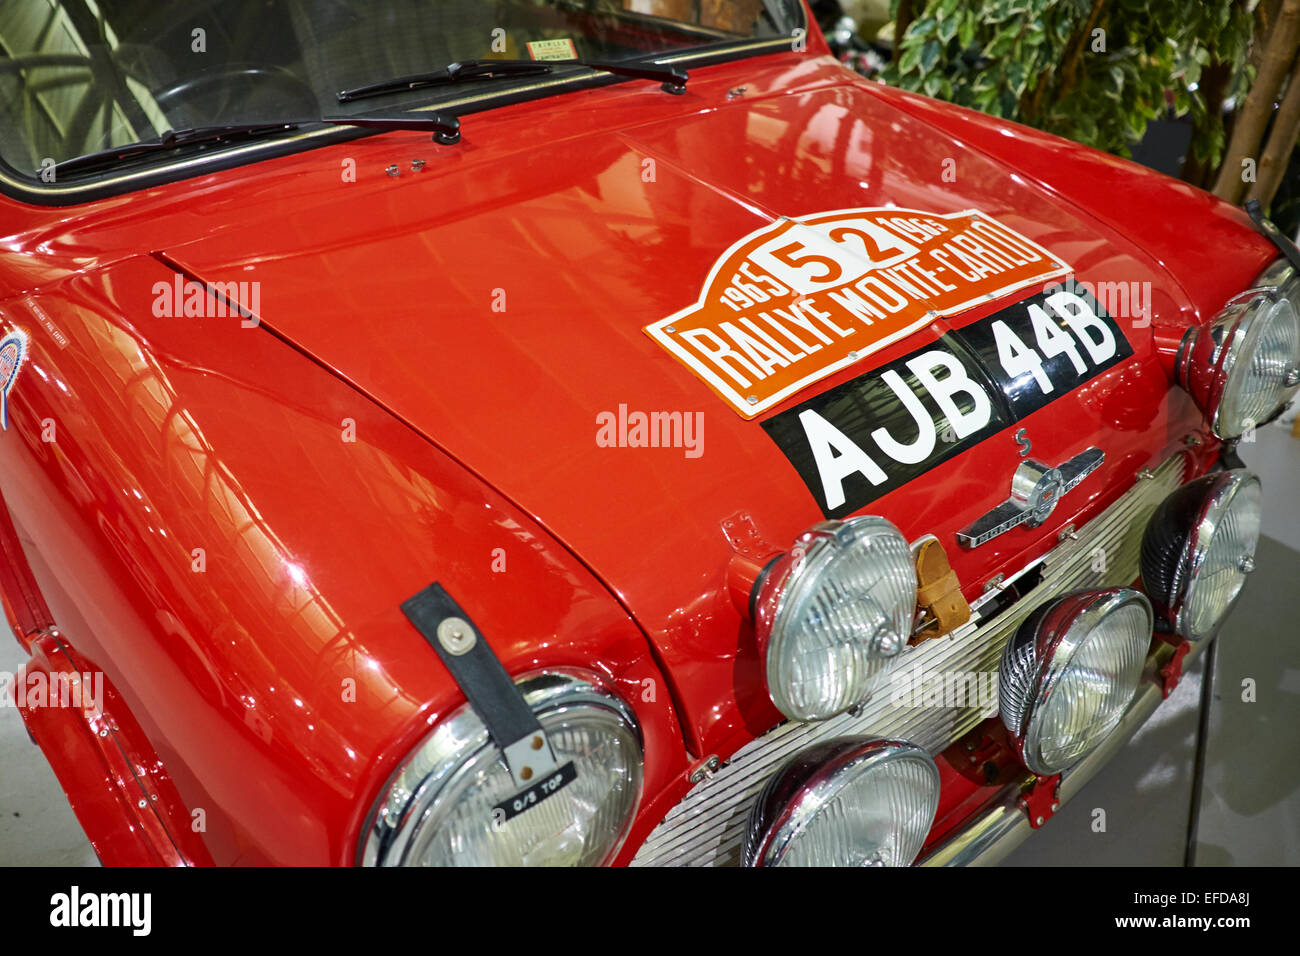 1964 Morris Mini Cooper S qui a remporté le Rallye de Monte Carlo 1965 Heritage Motor Center Gaydon dans le Warwickshire UK Banque D'Images